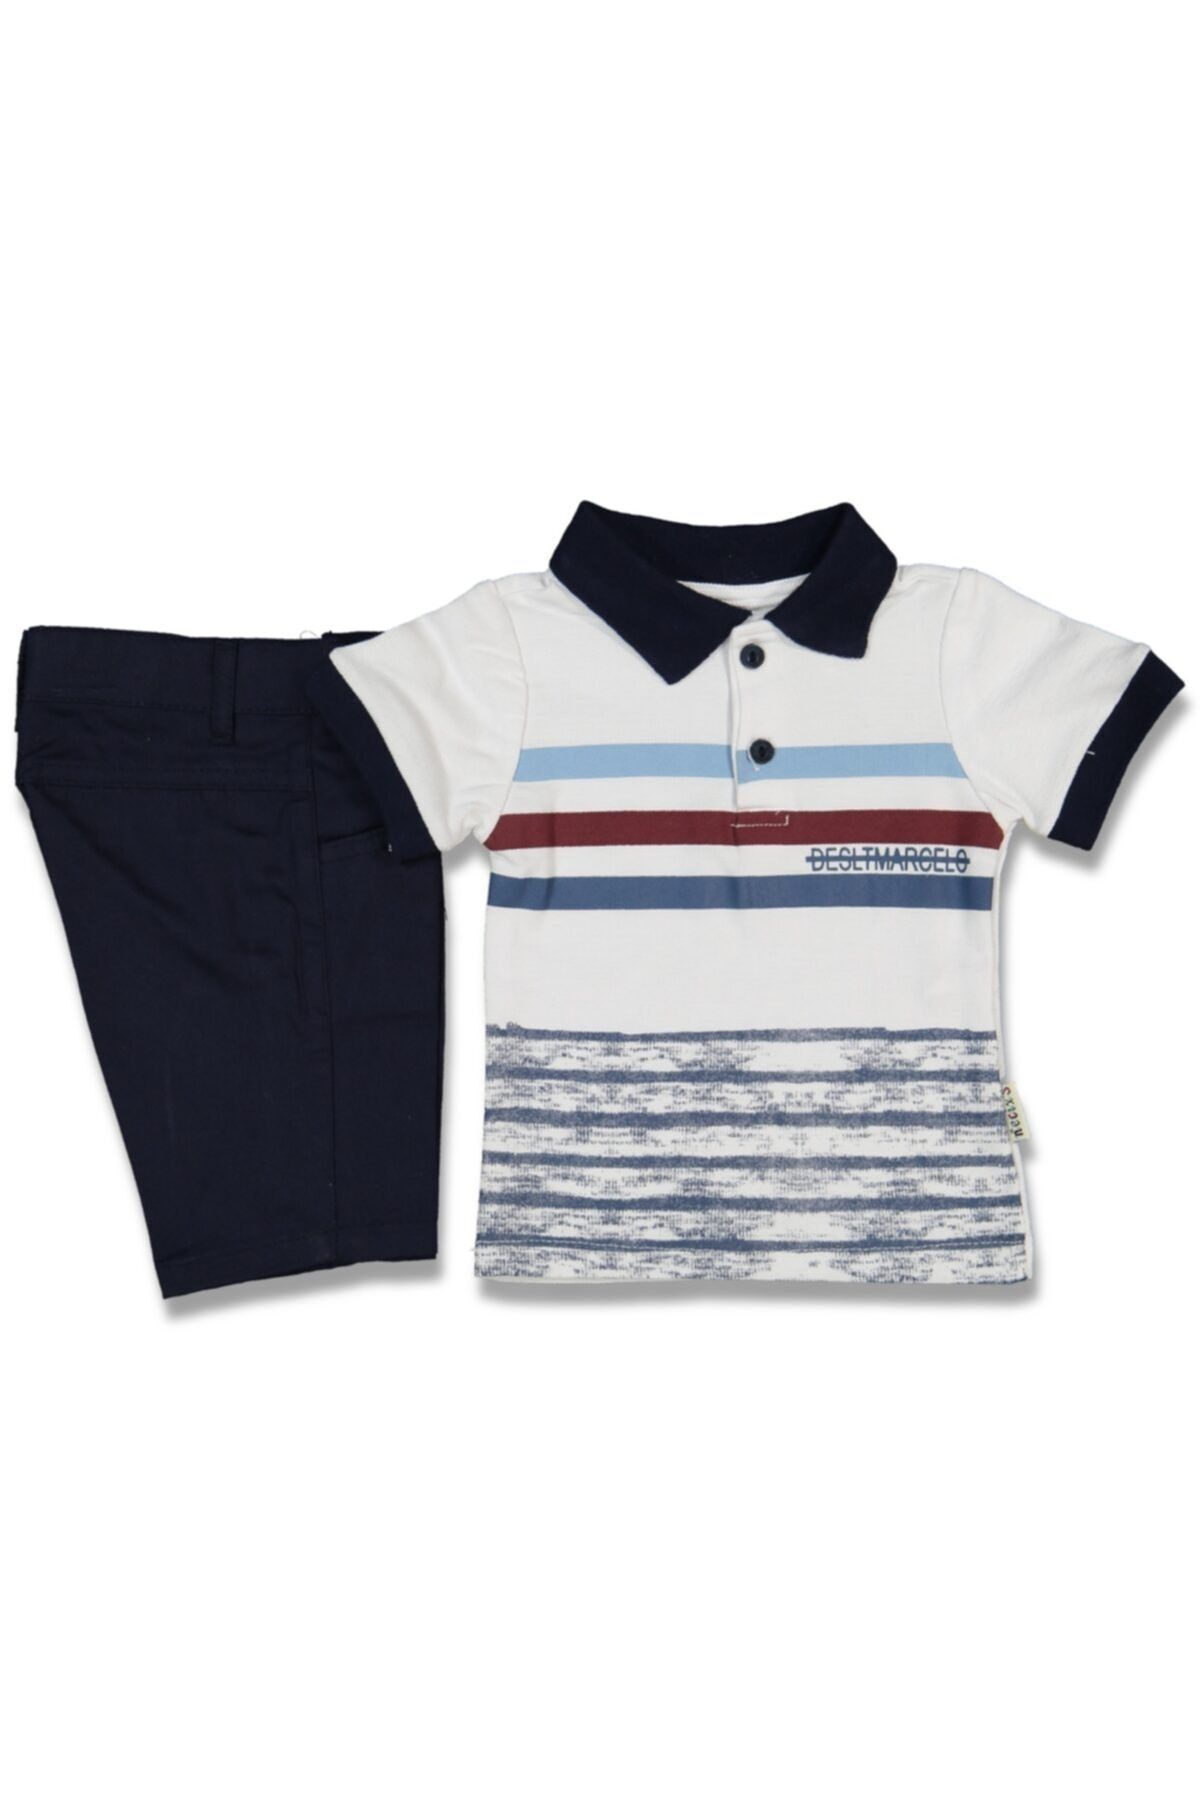 Necix's Çizgili Erkek Çocuk Beyaz / Lacivert 2 Parça T-shirt / Şort Takım 91590